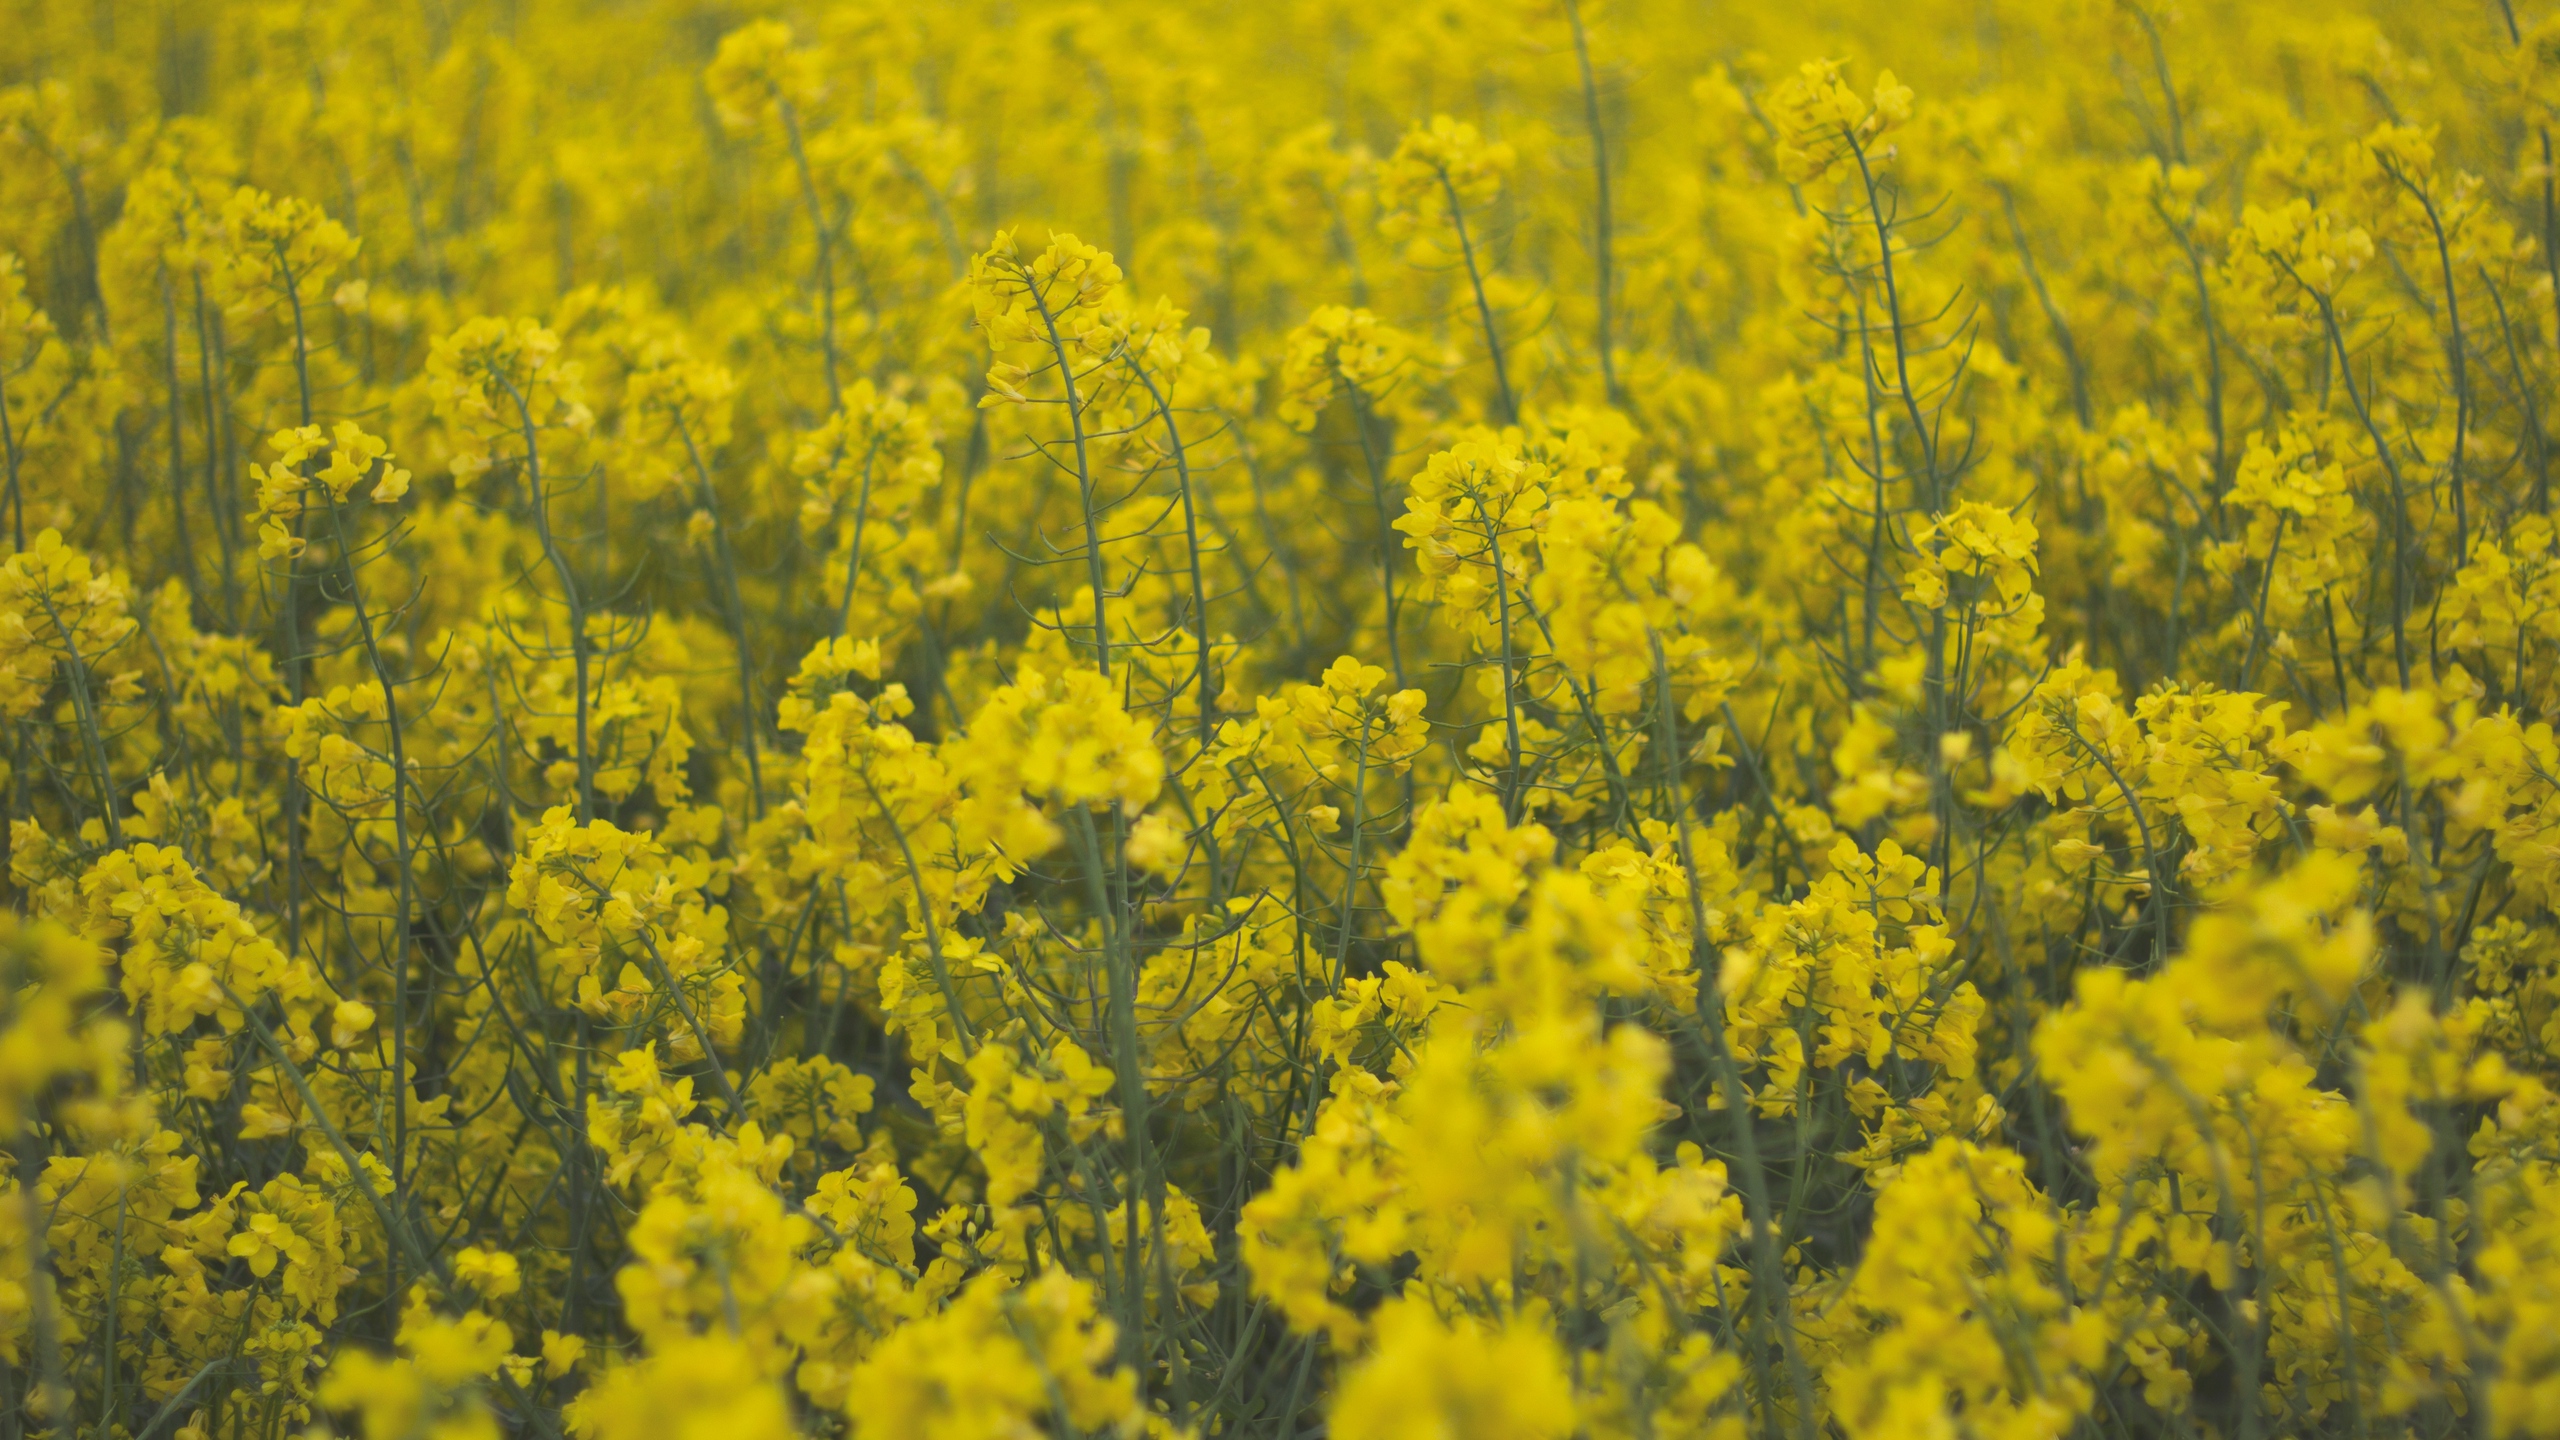 Download wallpaper 2560x1440 flowers, field, yellow, plants